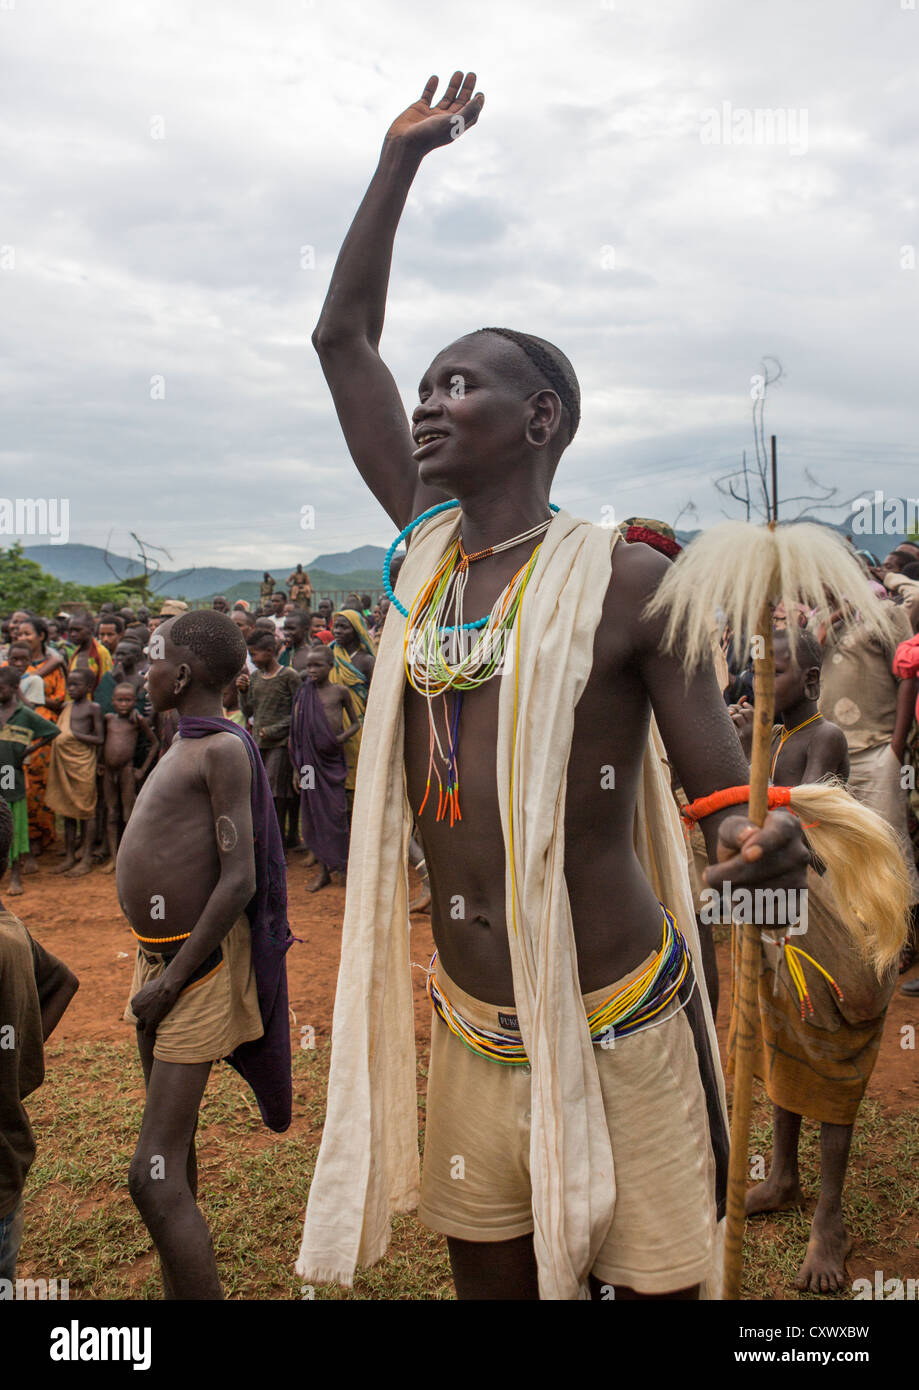 Suri Tribu Man lors d'une cérémonie organisée par le gouvernement, Kibish, vallée de l'Omo, Ethiopie Banque D'Images